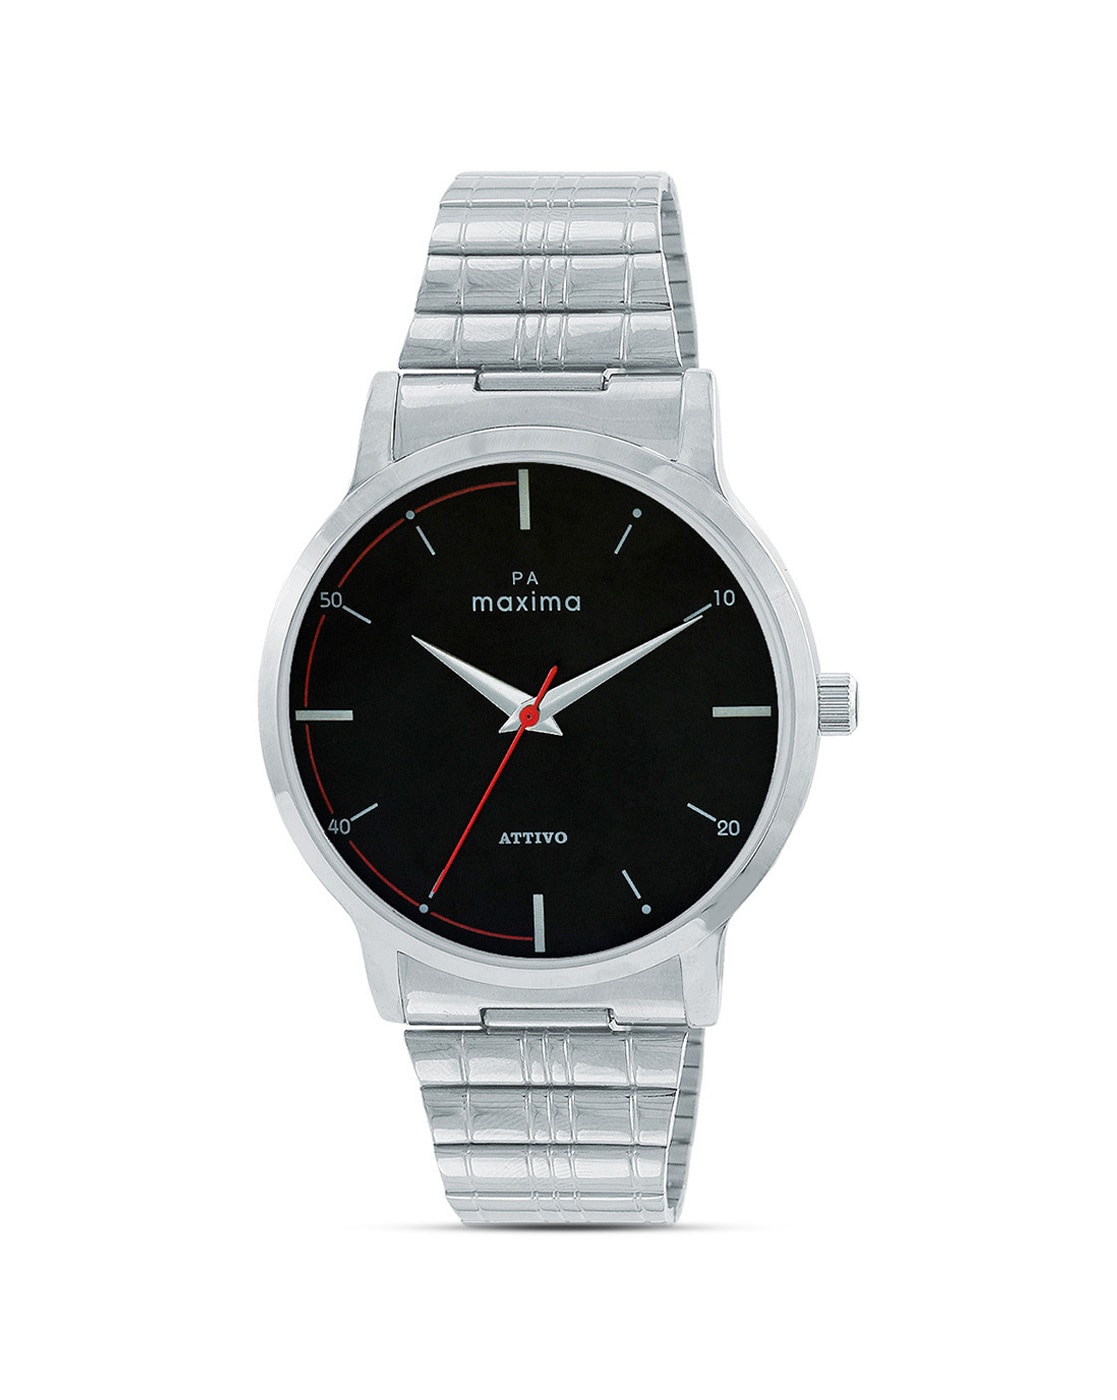 Invella Genuine Leather Watch Strap For Maxima Max Pro X2 Smartwatch  (Black) | Invella